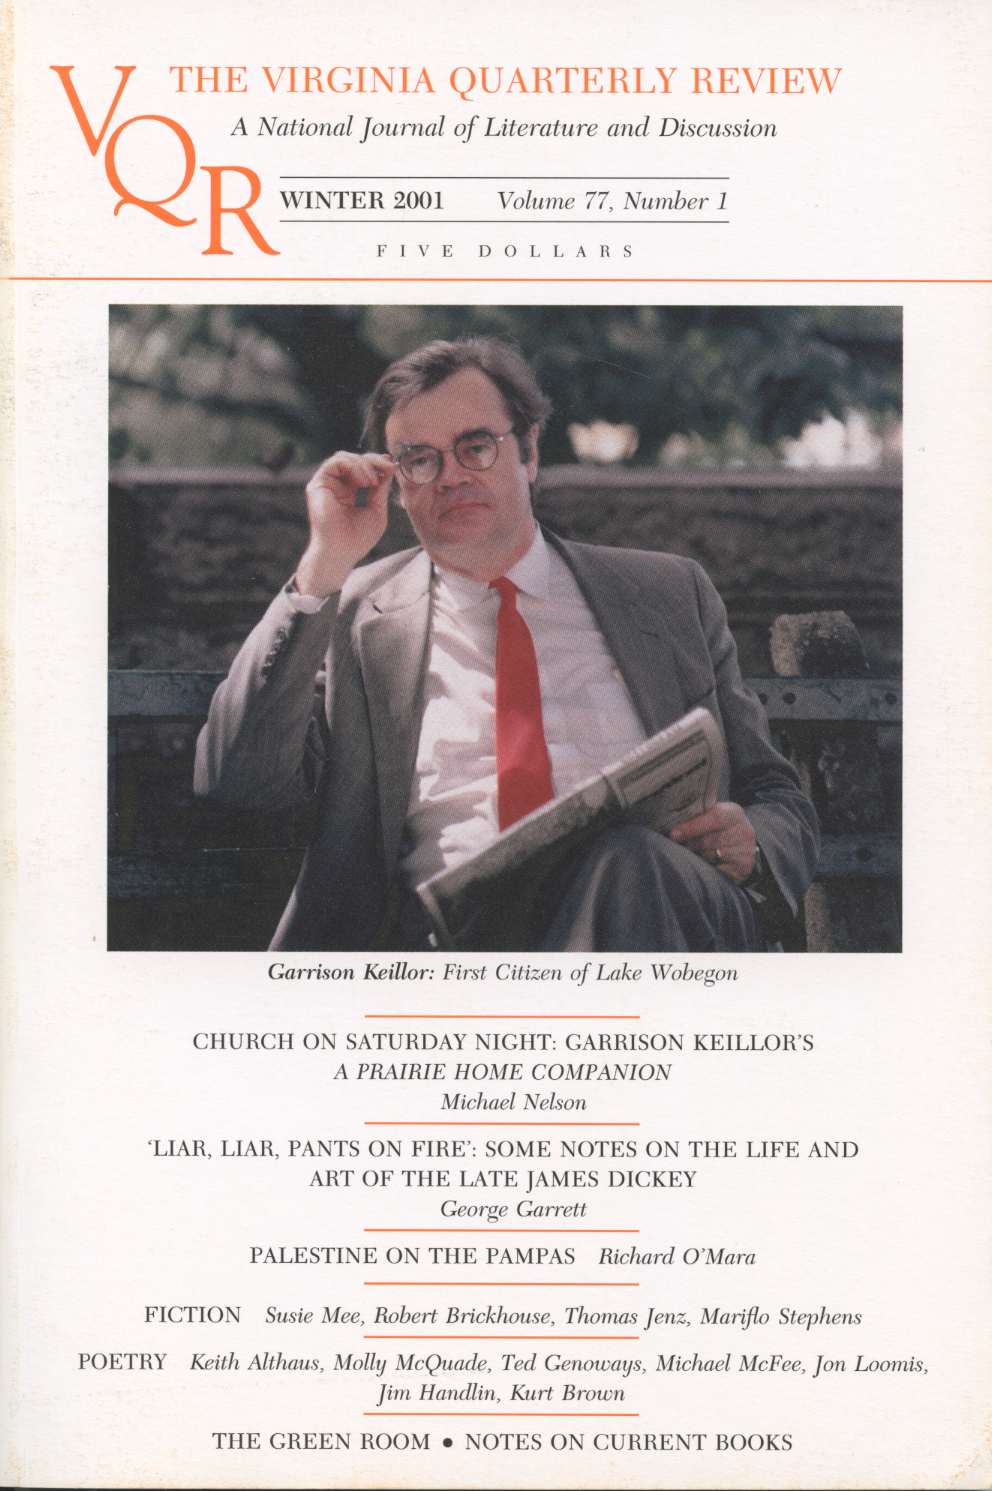 Virginia Quarterly Review, Winter 2001 cover